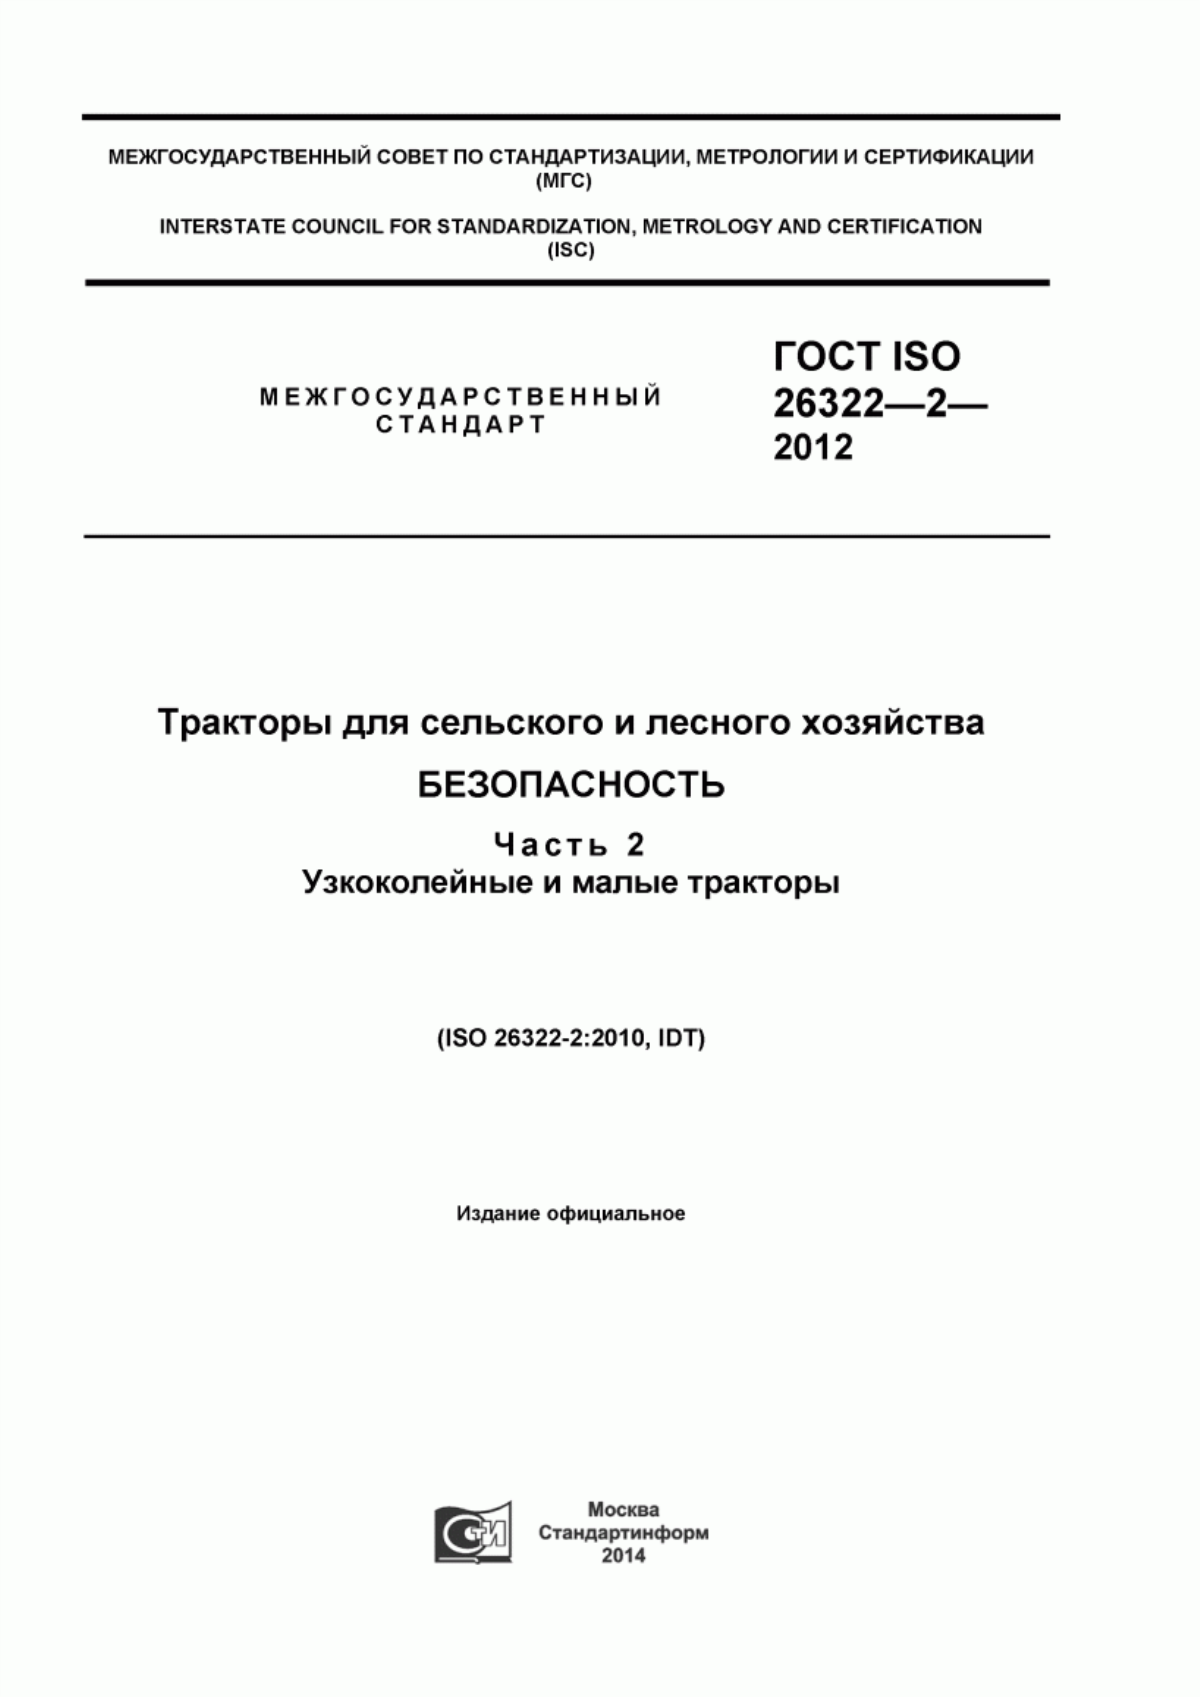 ГОСТ ISO 26322-2-2012 Тракторы для сельского и лесного хозяйства. Безопасность. Часть 2. Узкоколейные и малые тракторы